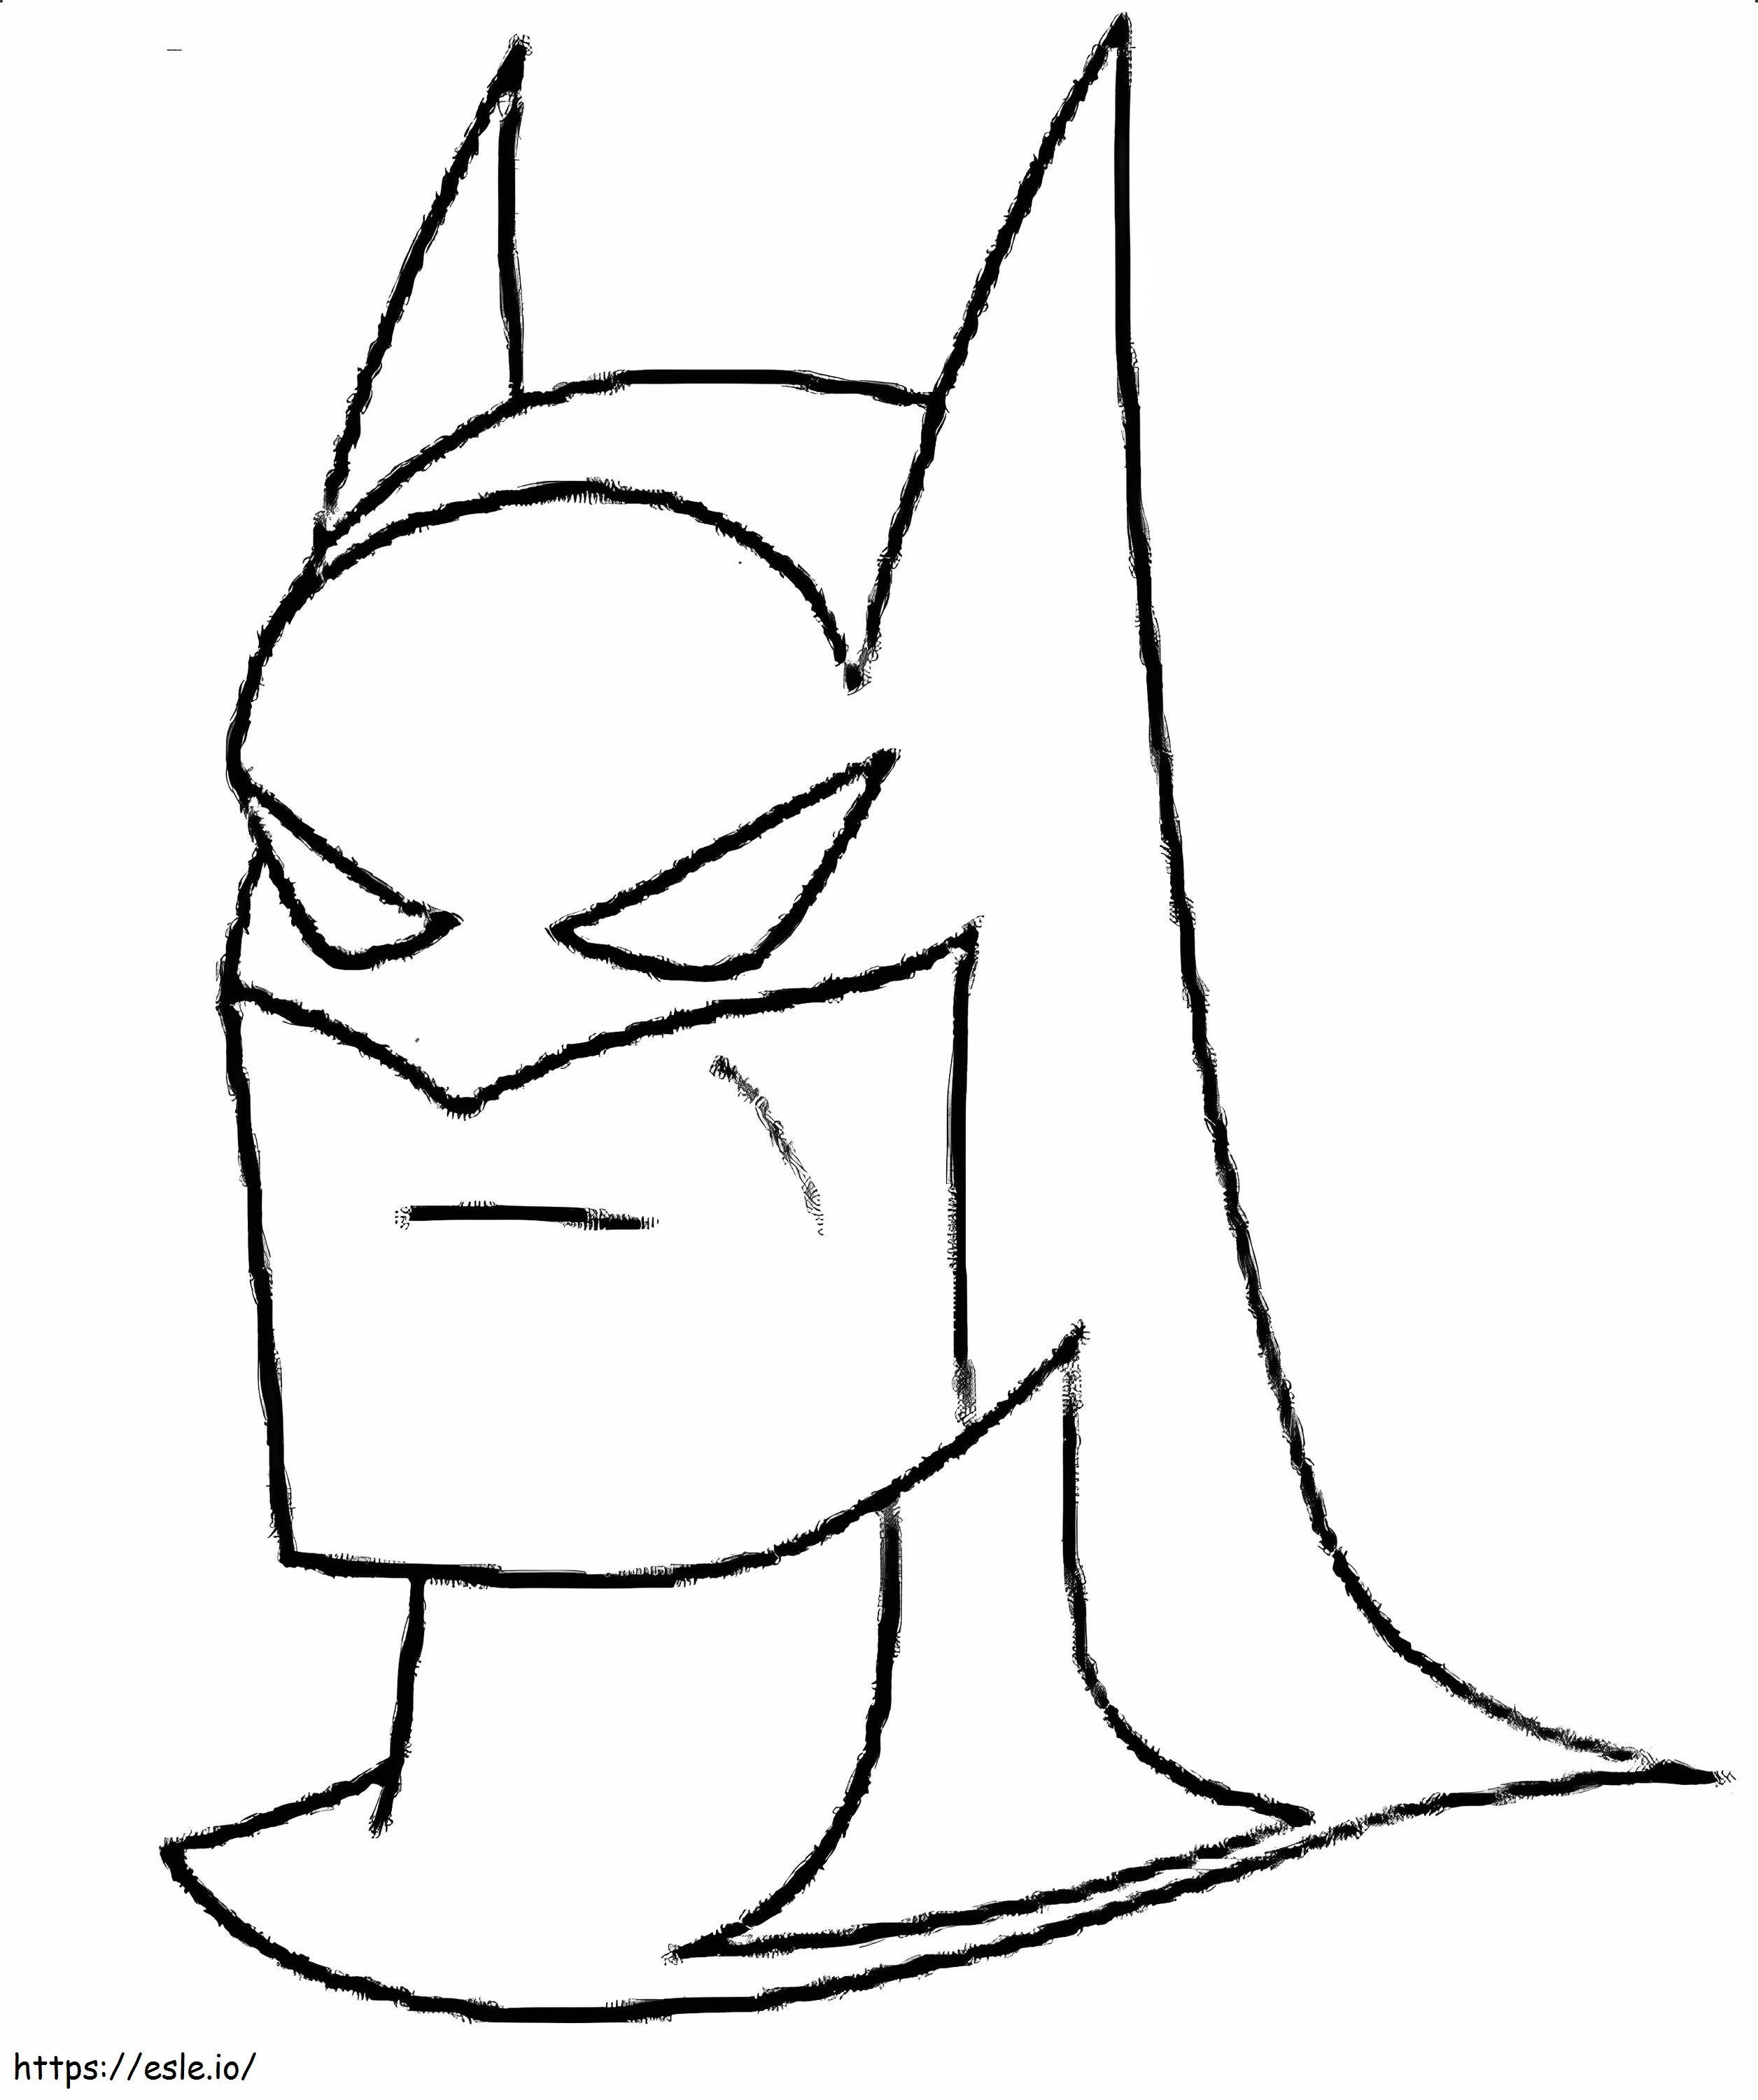 Batman mit Maske ausmalbilder